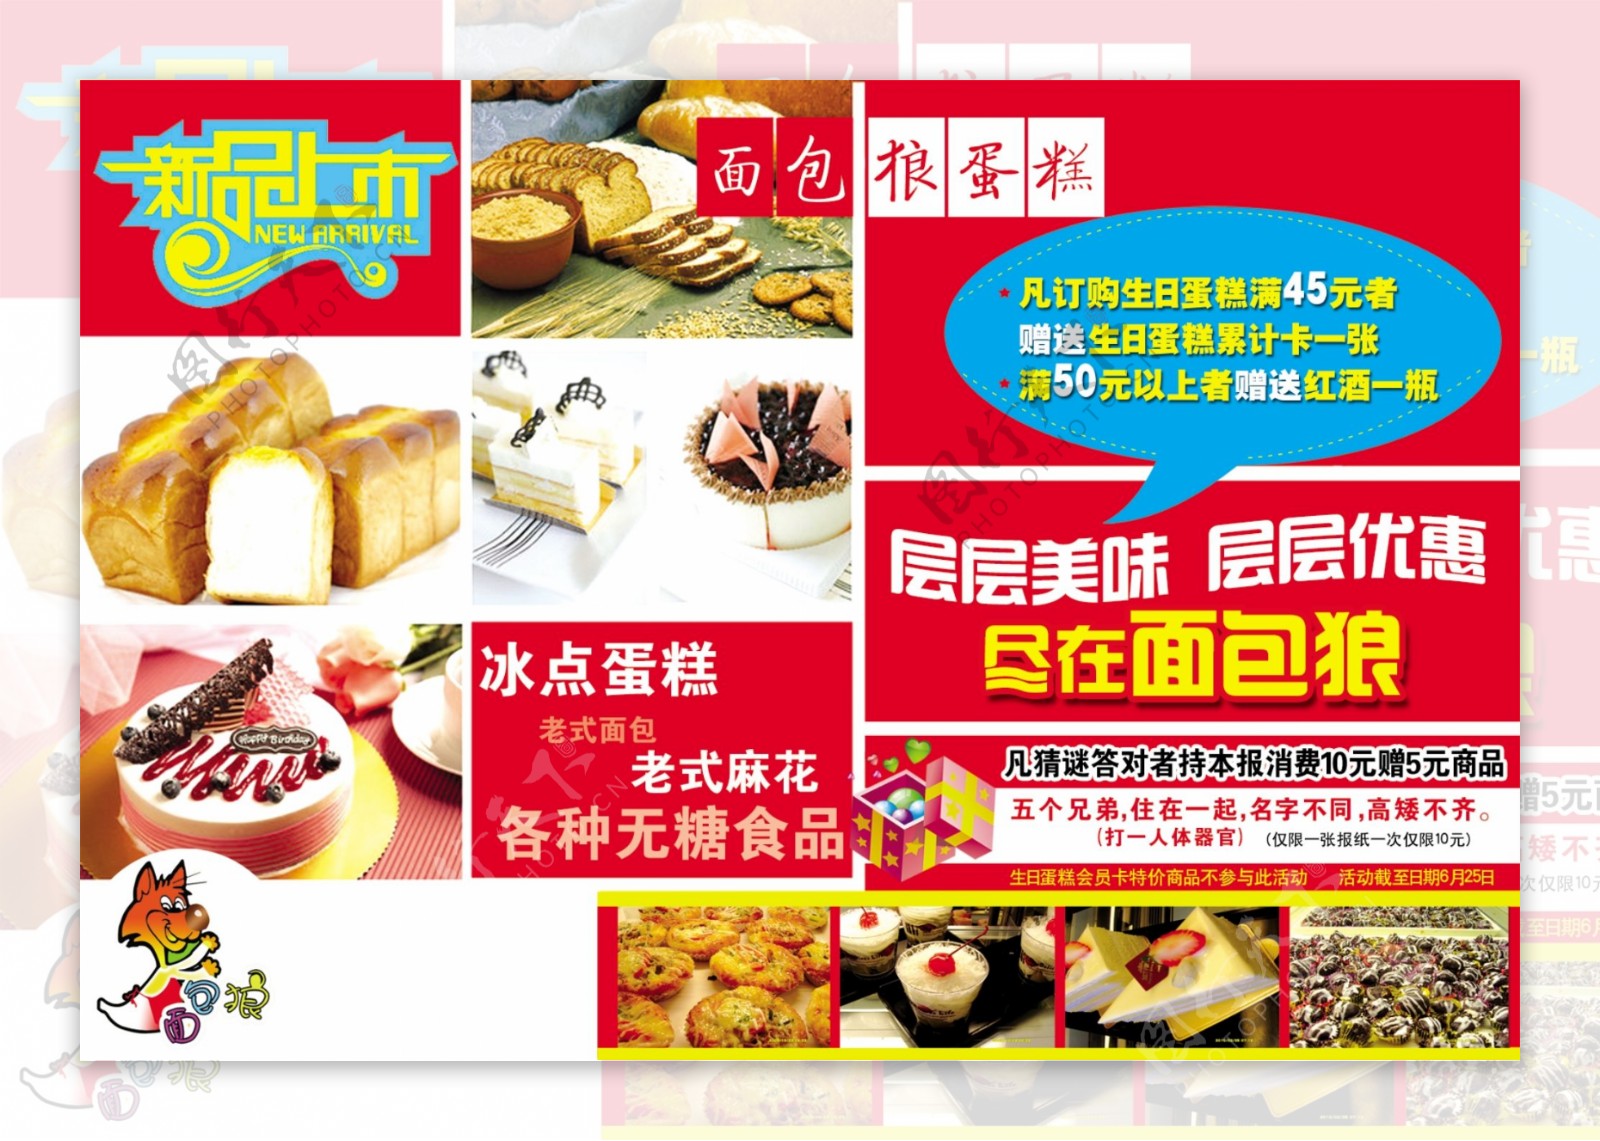 美味食物中华美食图片(2) - 25H.NET壁纸库